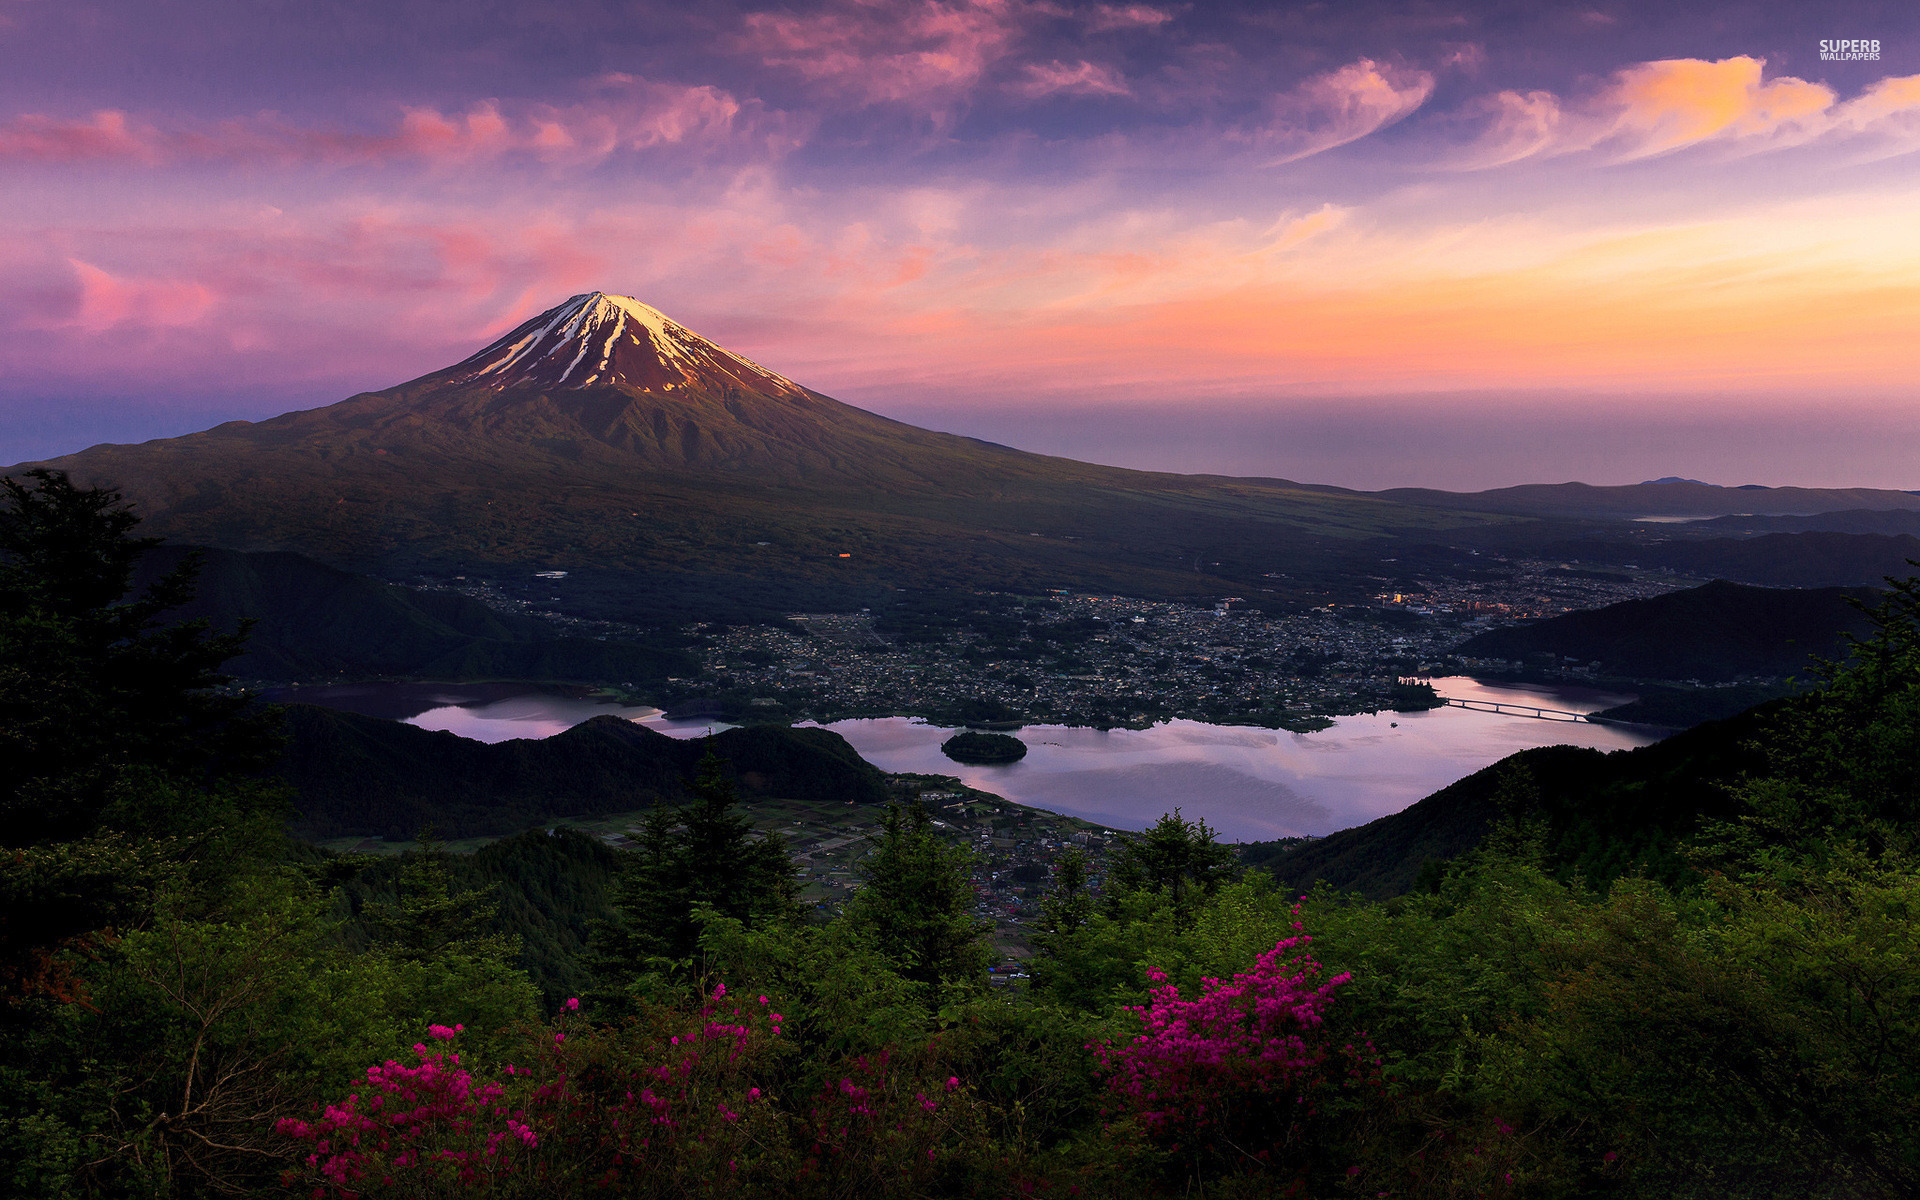 Mount Fuji Japan Asia Wallpaper Stock Photos